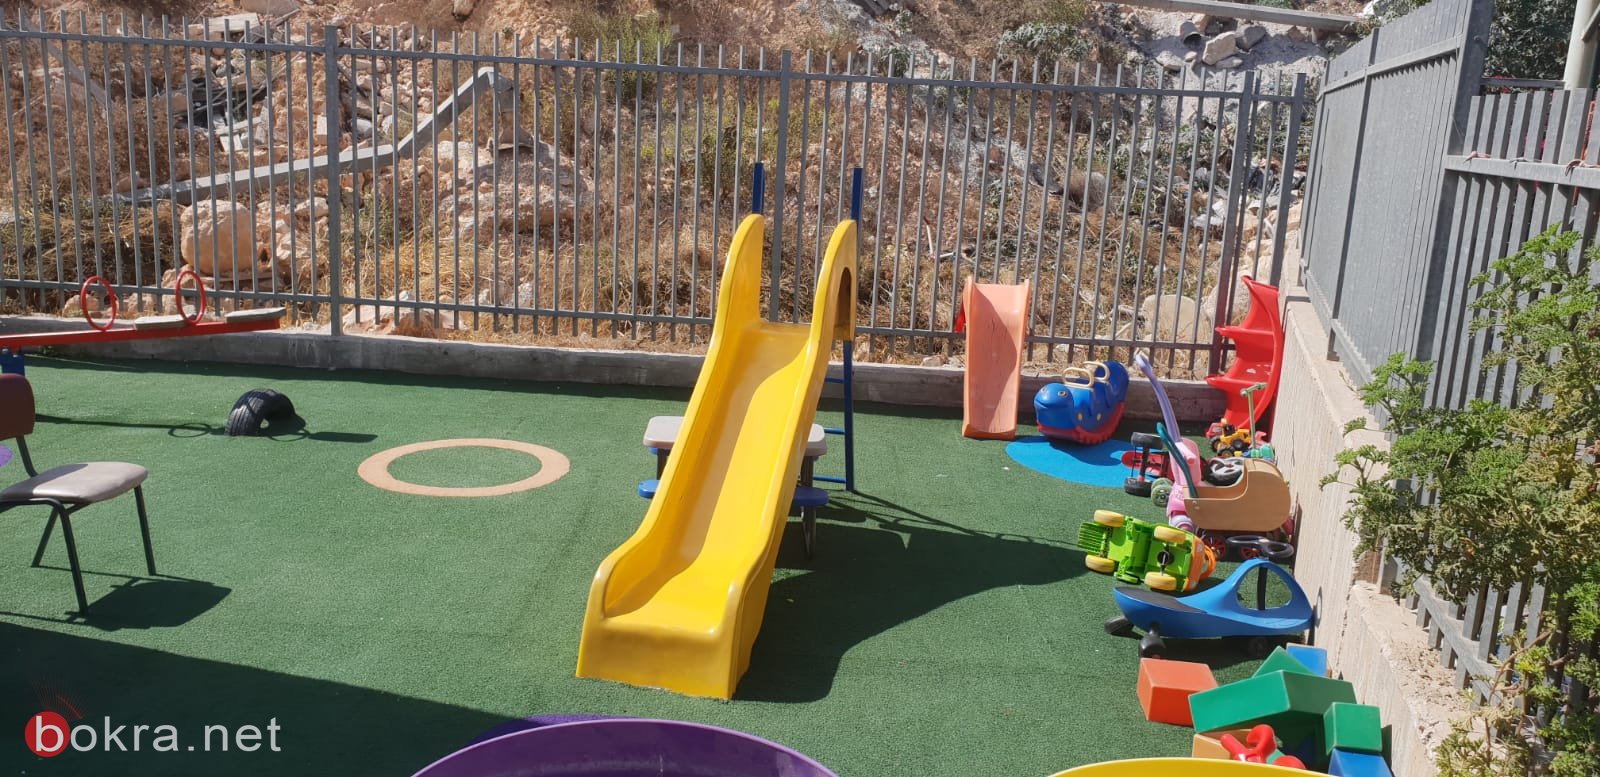  بلدية الناصرة: زيارة لصفوف البساتين والروضات وتفقد اوضاعها-3